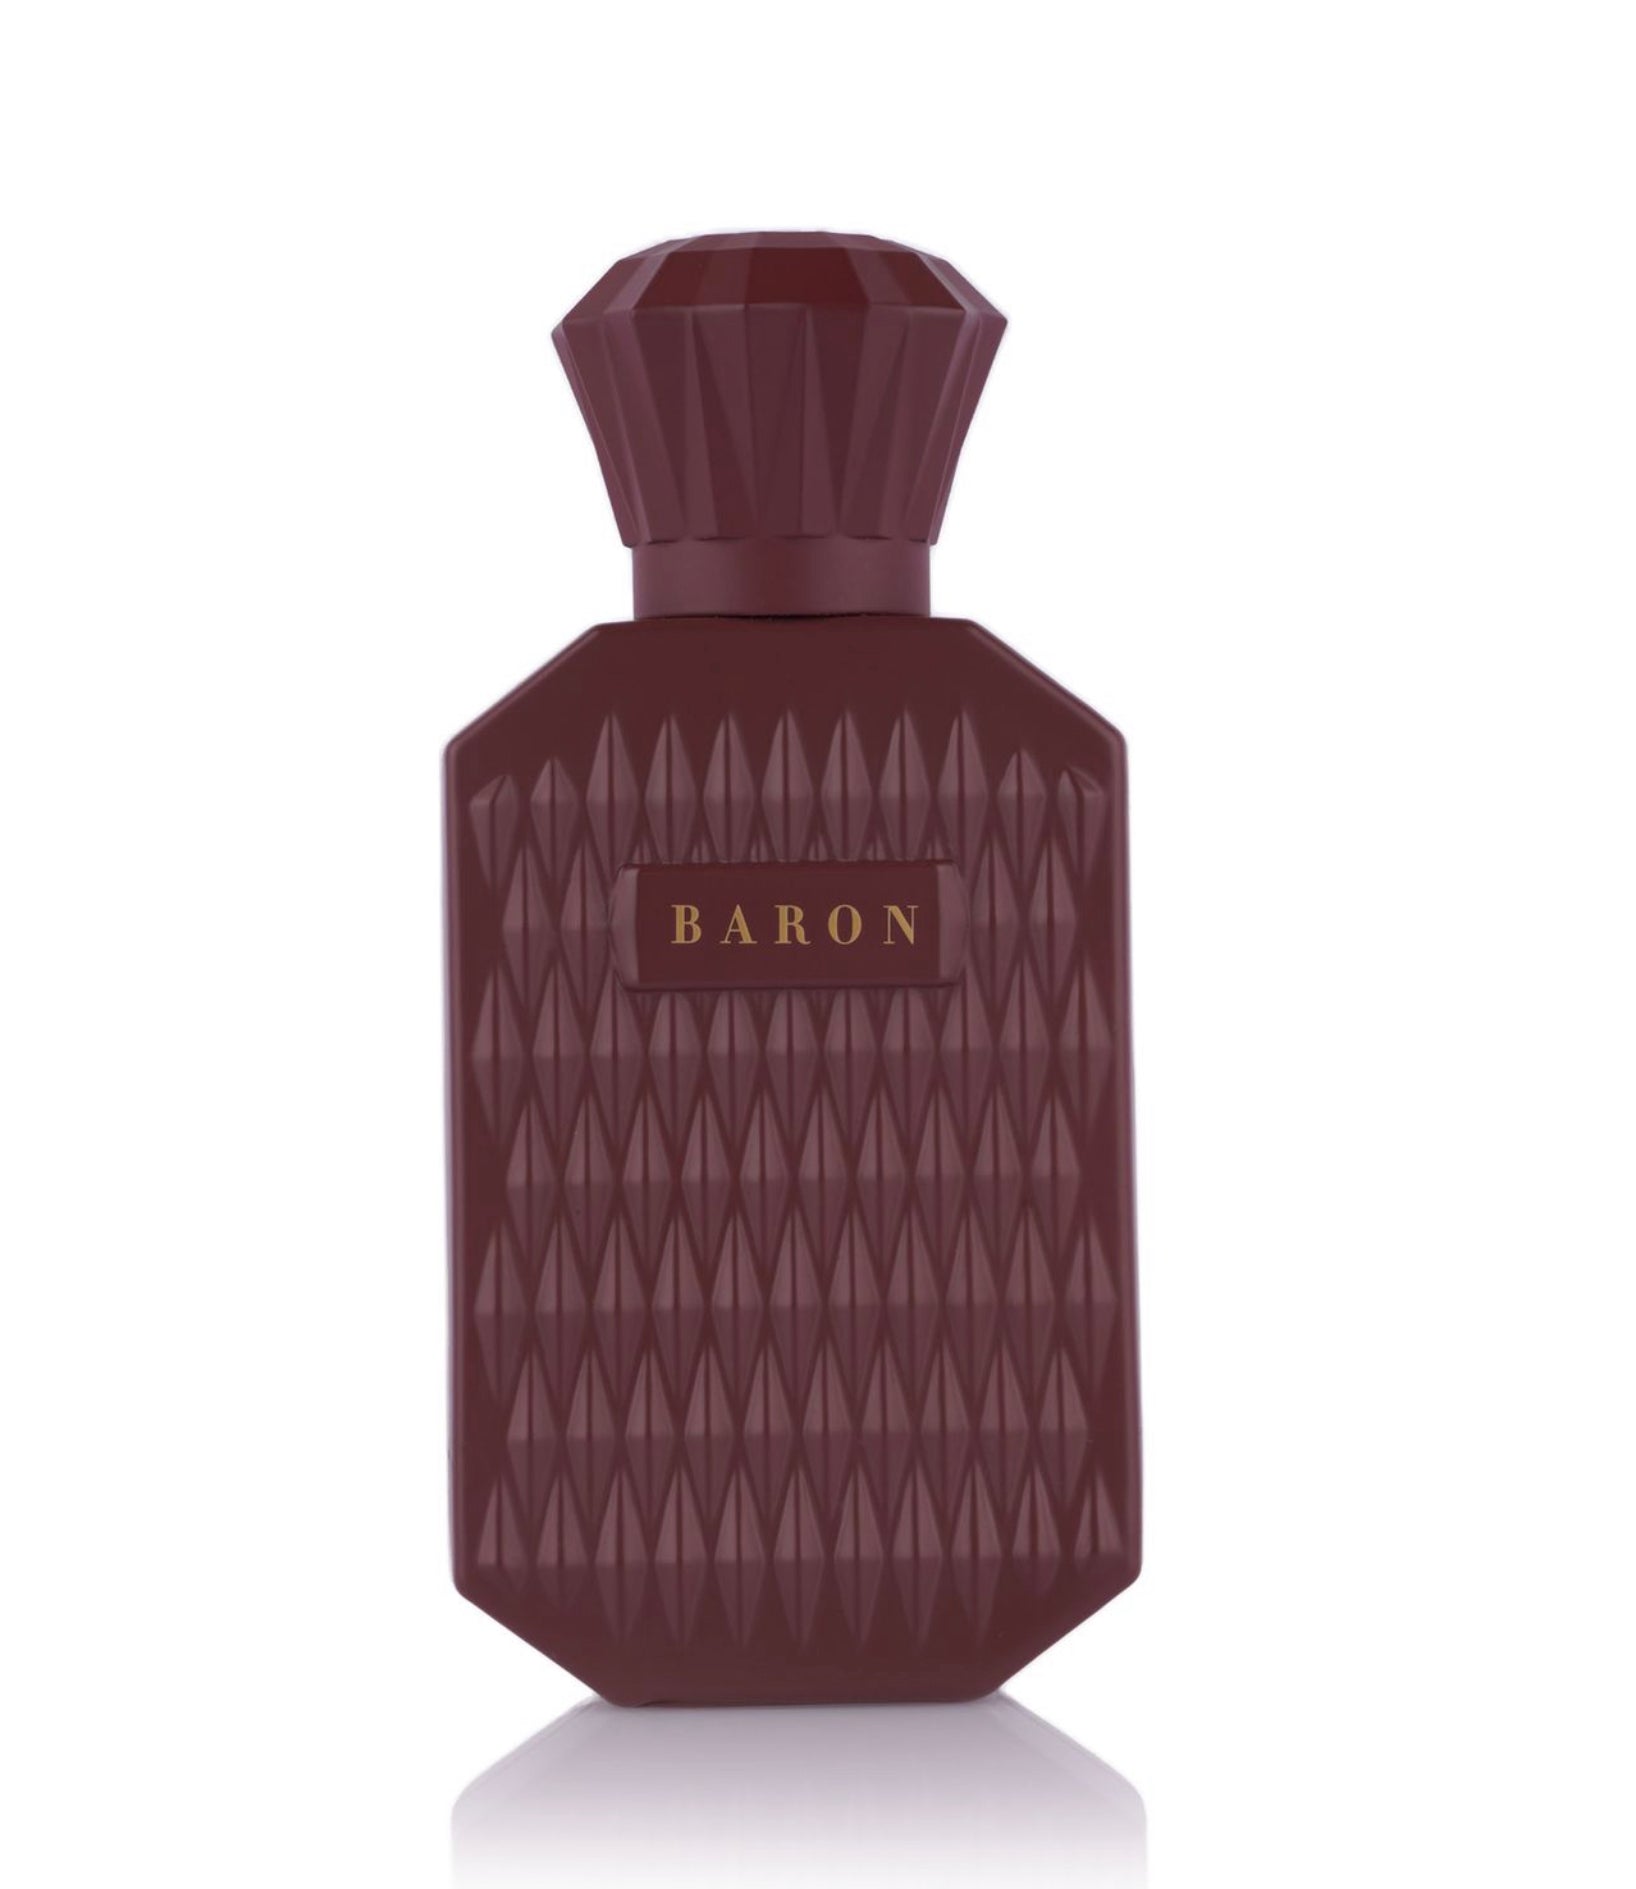 Baron (200 ml)